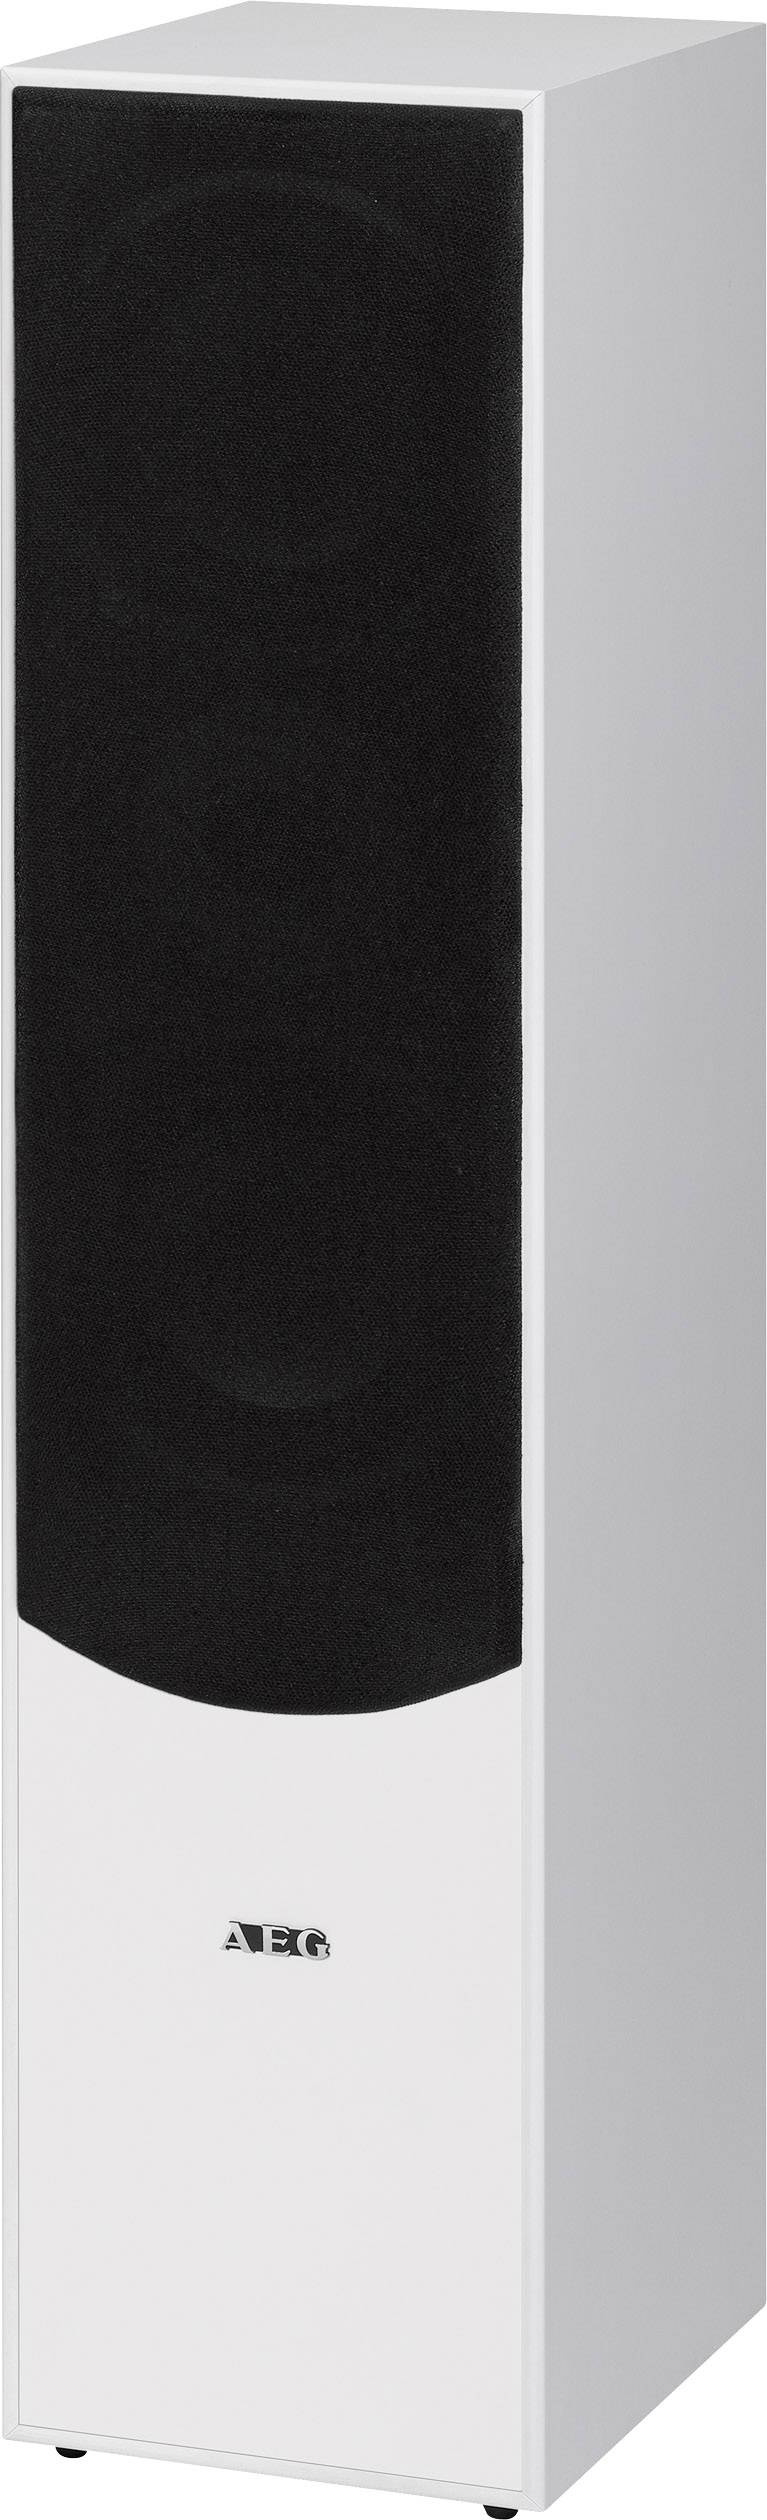 Import Allemagne AEG LB 4711 Haut-parleur vertical Puissance 500 W Noir 